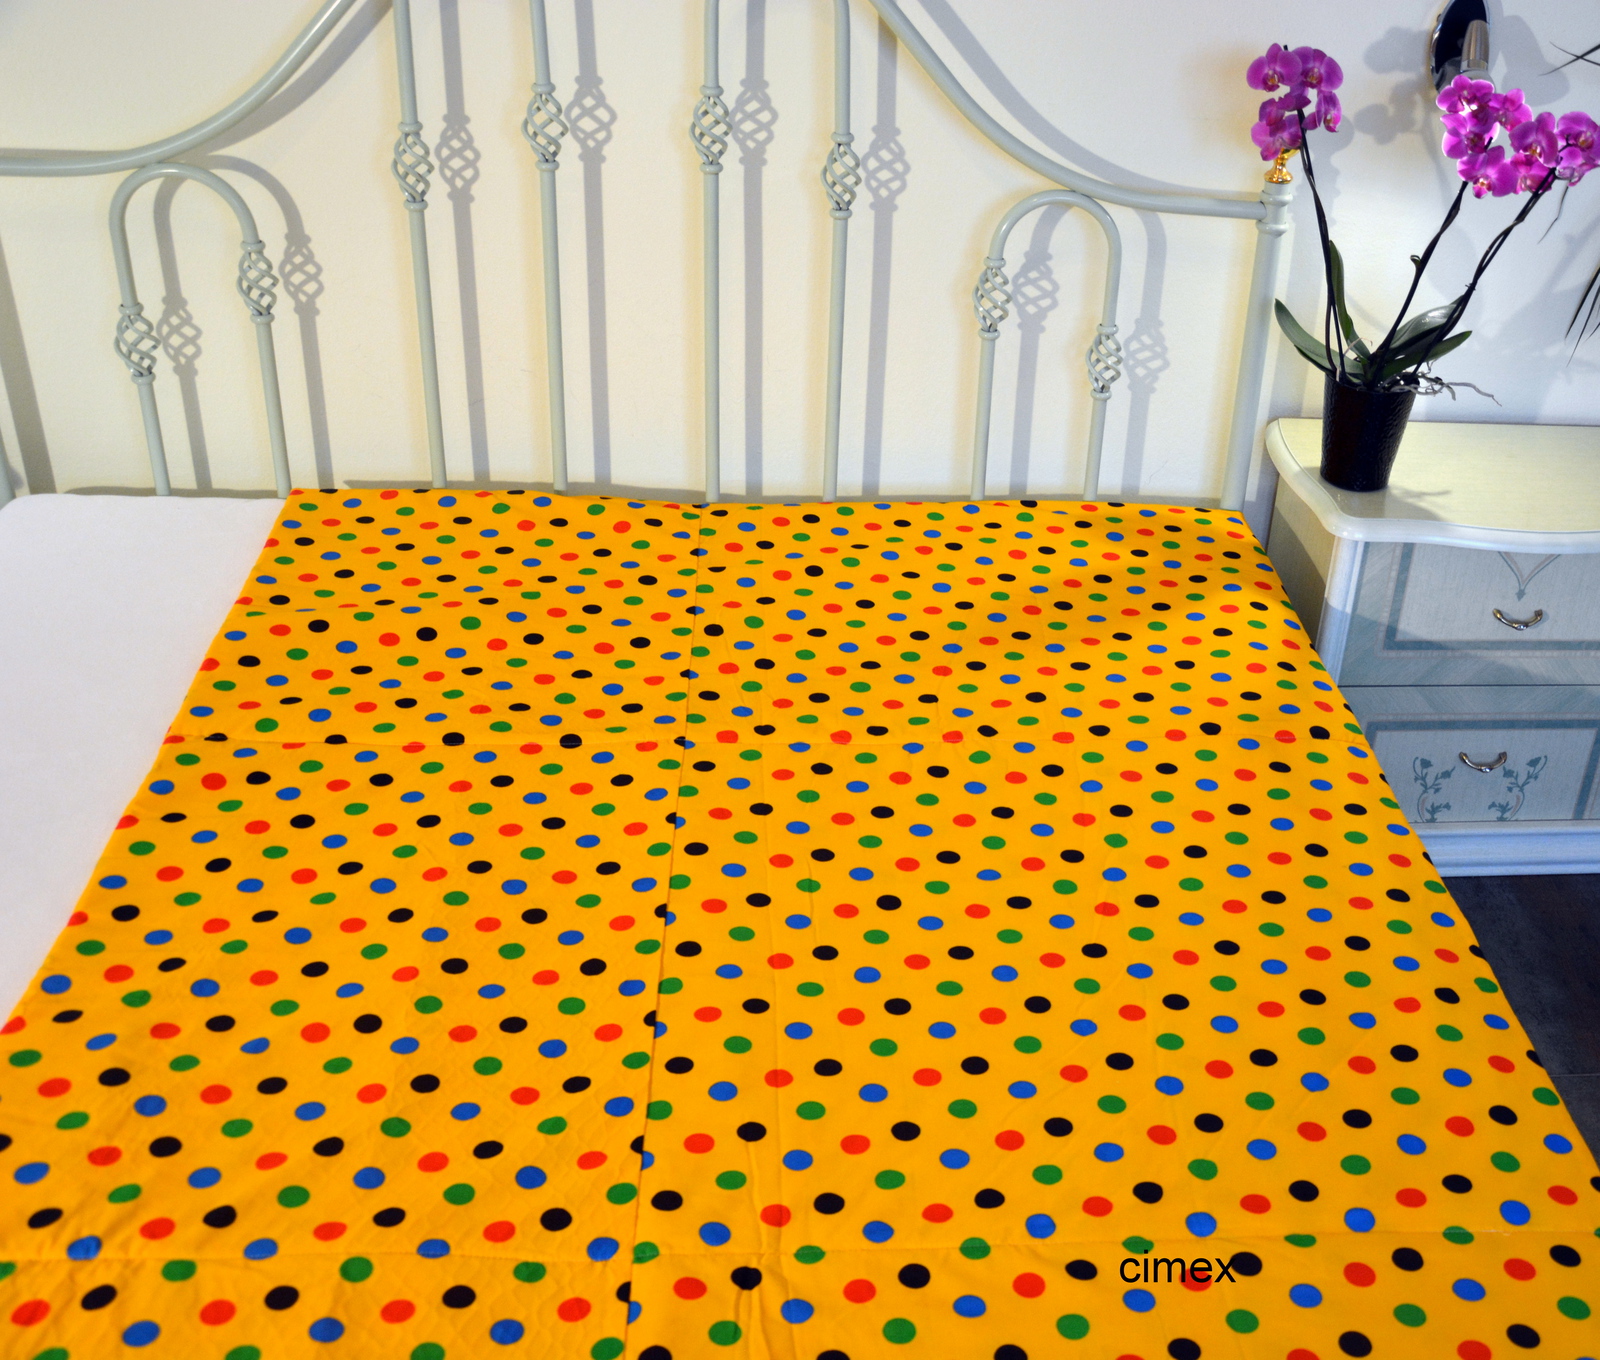 Letní deka-Barevné puntíky na žlutém počet kusů skladem 4 ks